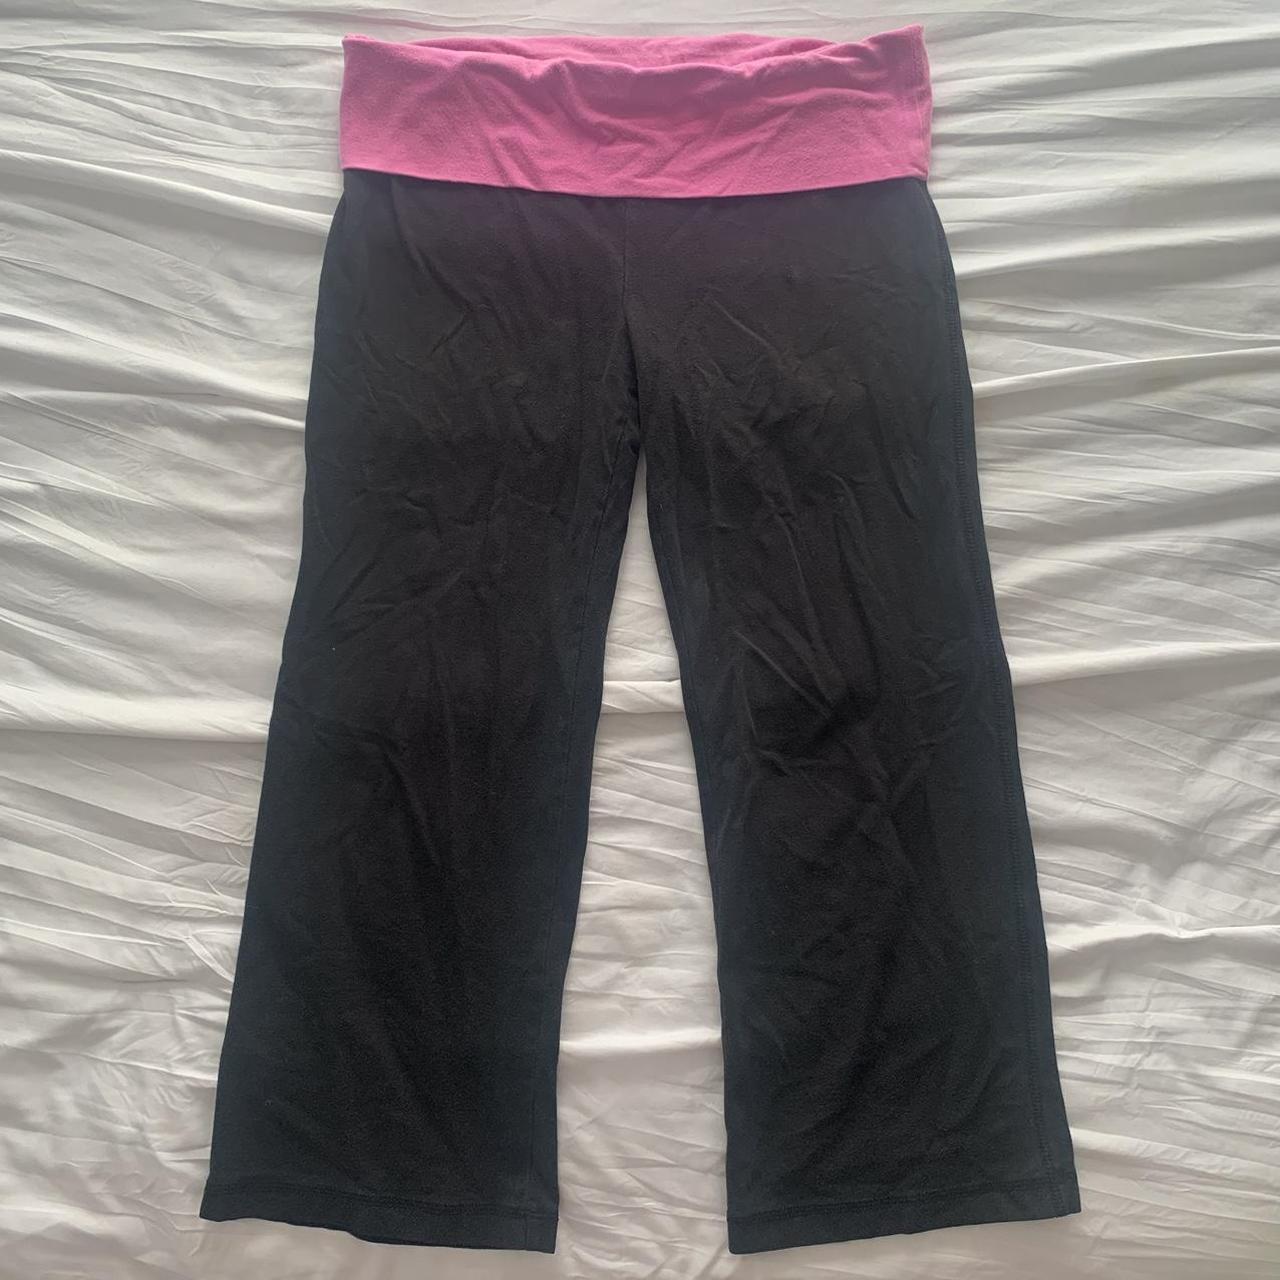 pink 2000s No Boundaries Yoga Foldover leggings - Depop